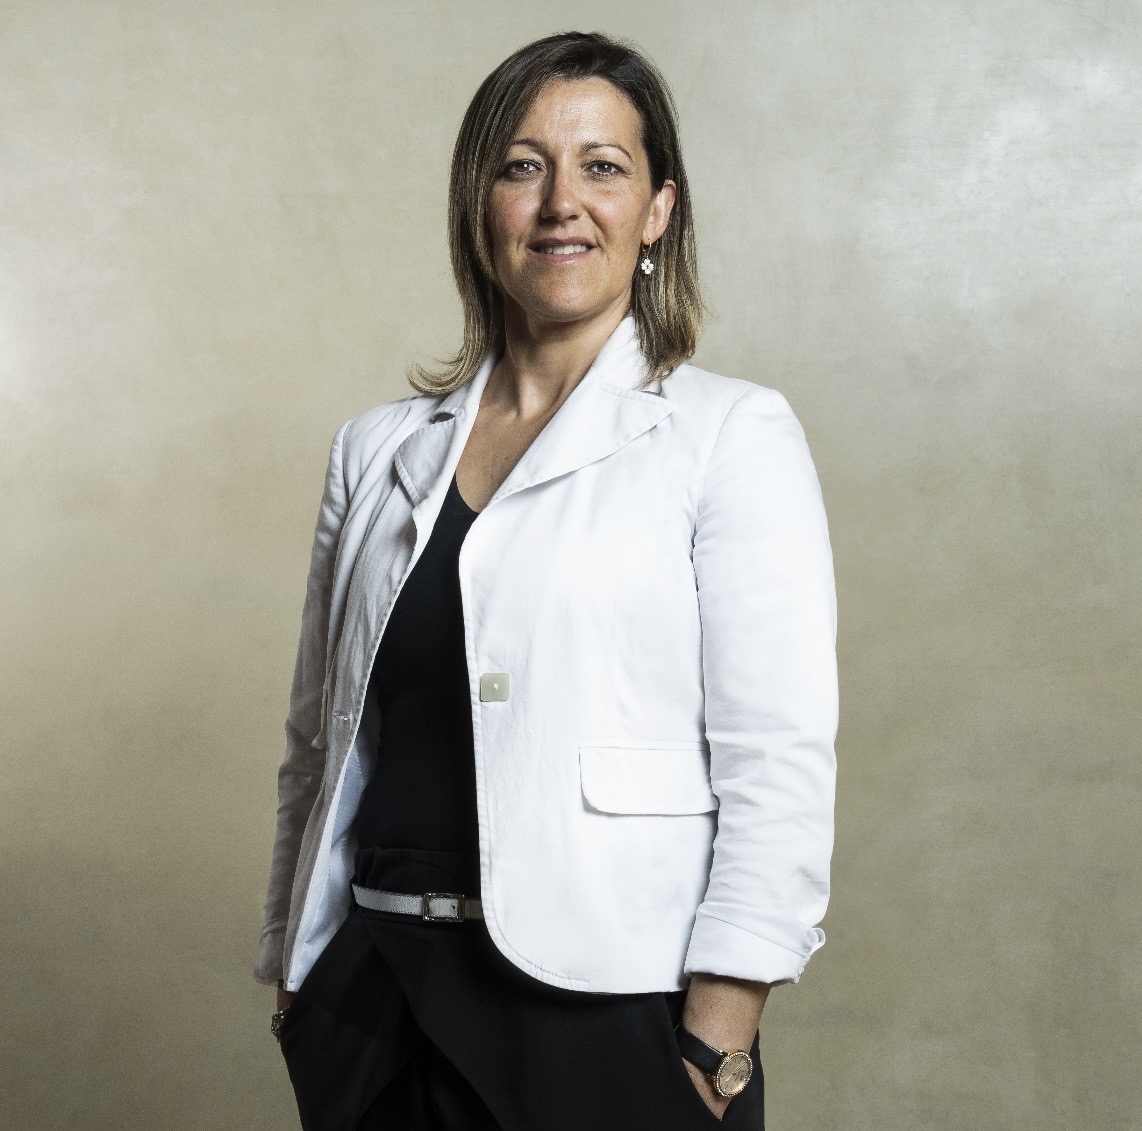 Intervista a Cristina Genovese, delegata regionale FIAIP Donna Veneto: grande soddisfazione per il finanziamento ottenuto dal Fondo Impresa Femminile